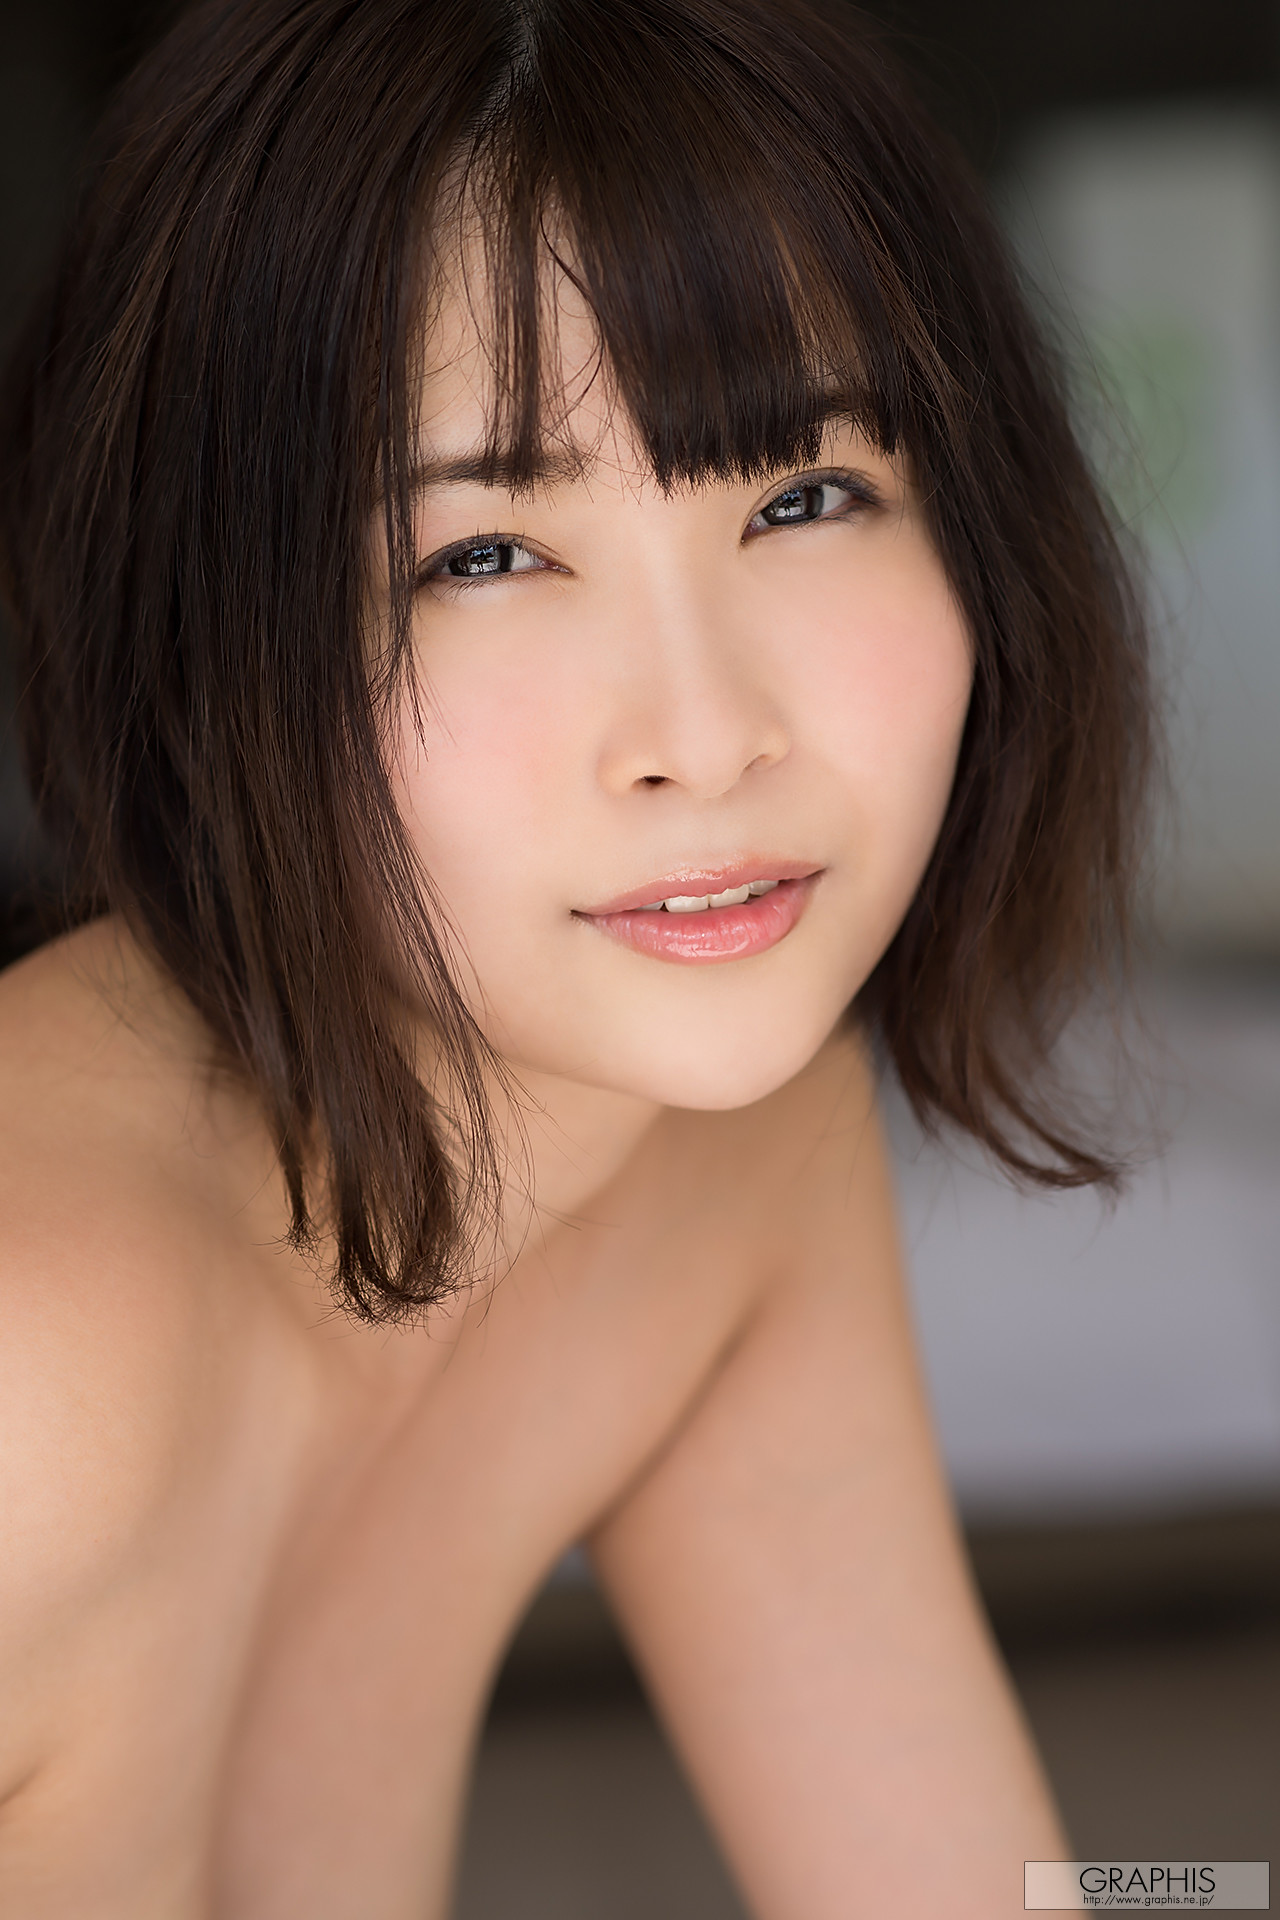 Asuna Kawai 河合あすな, [Graphis] Gals 「Godly Beautiful Breast」 Vol.04